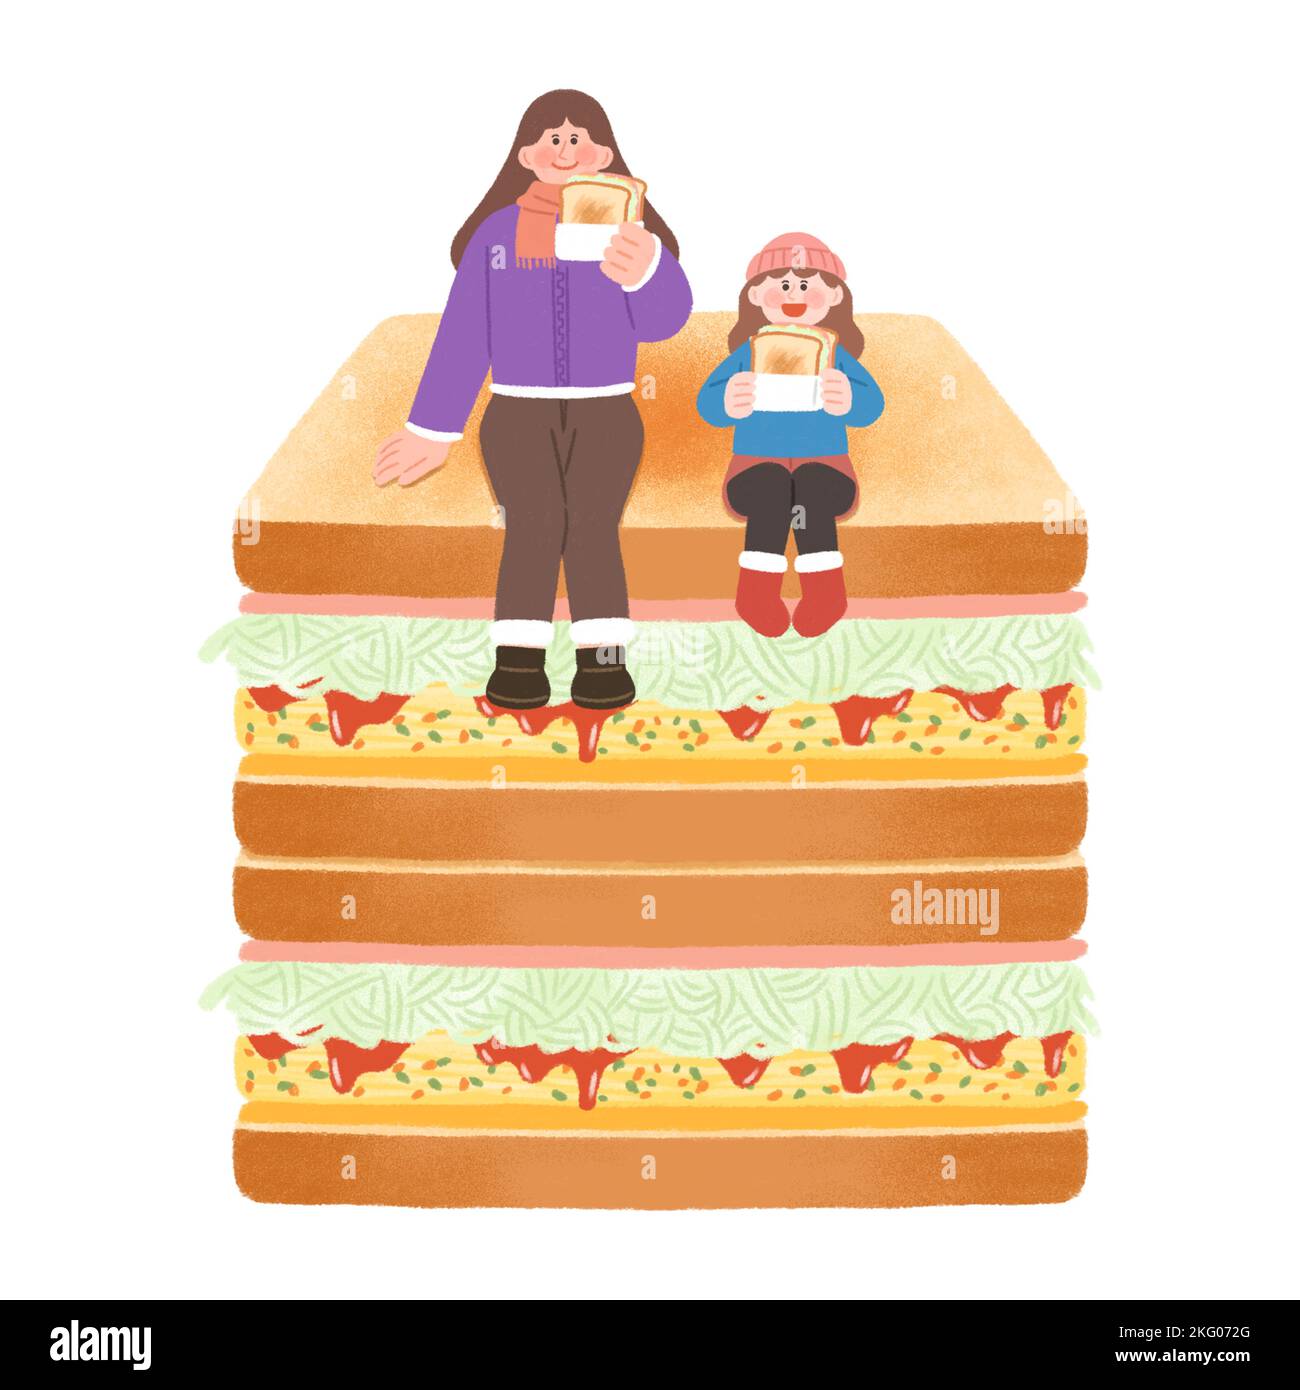 comida callejera de invierno coreana ilustration toast, sándwich Foto de stock